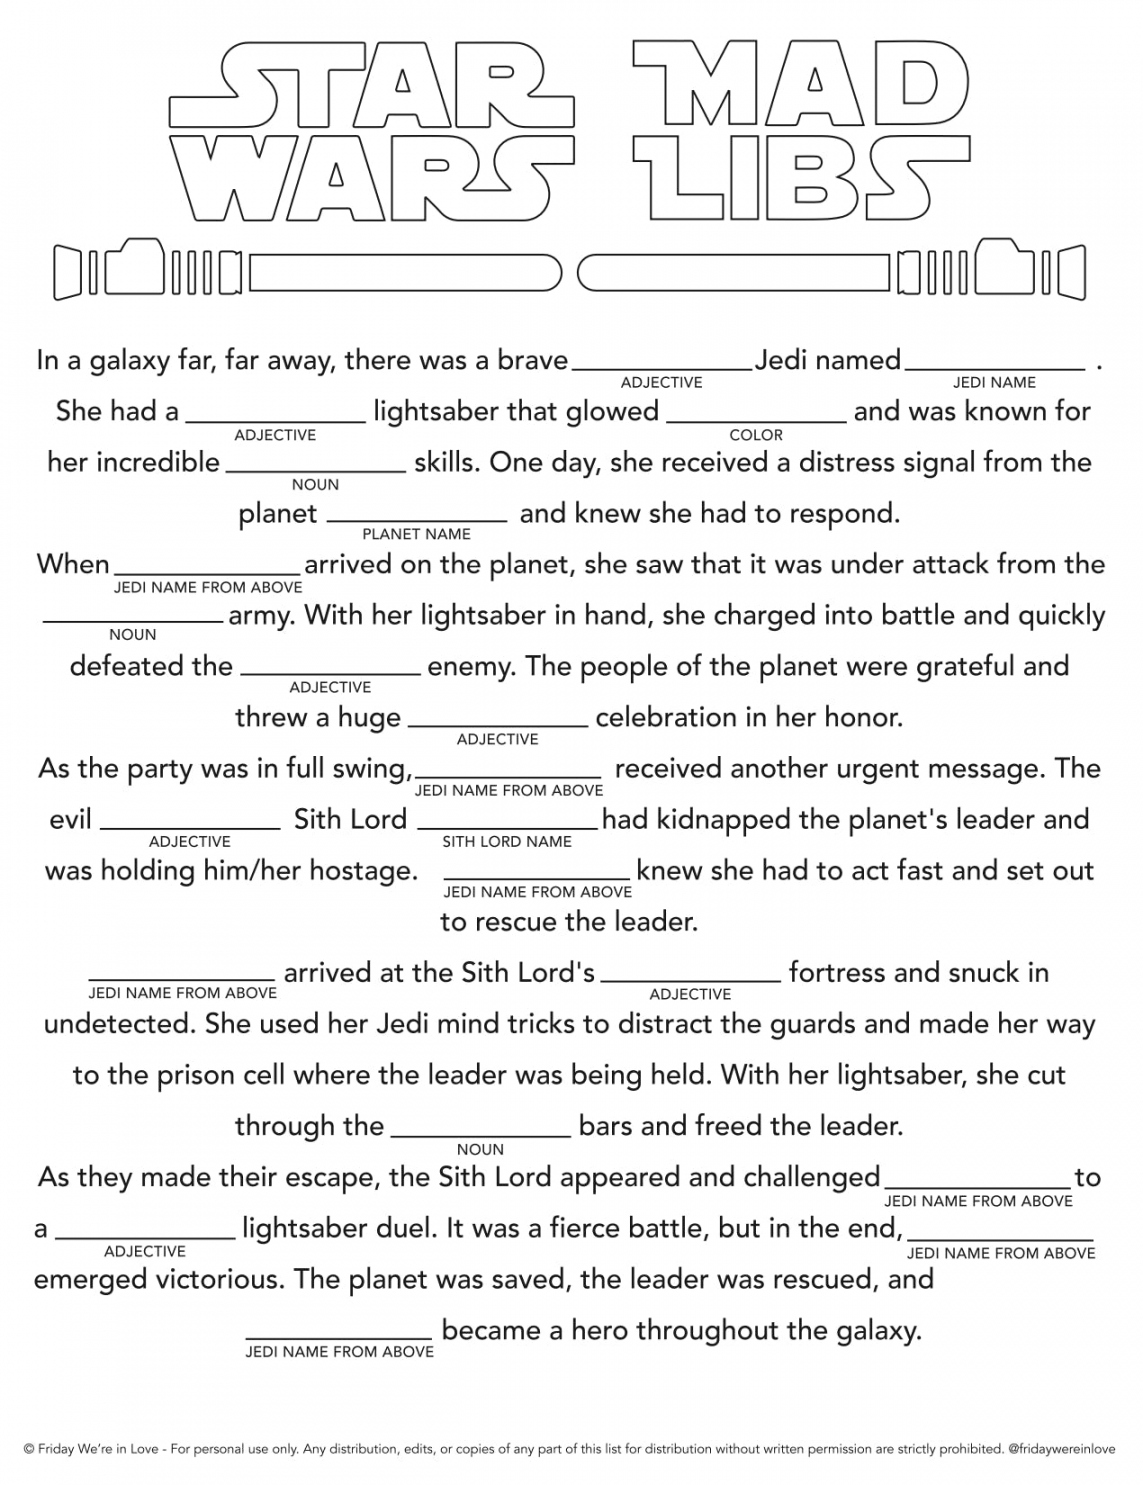 Free Printable Mad Libs - Printable - Star Wars Mad Libs Printable - Friday We